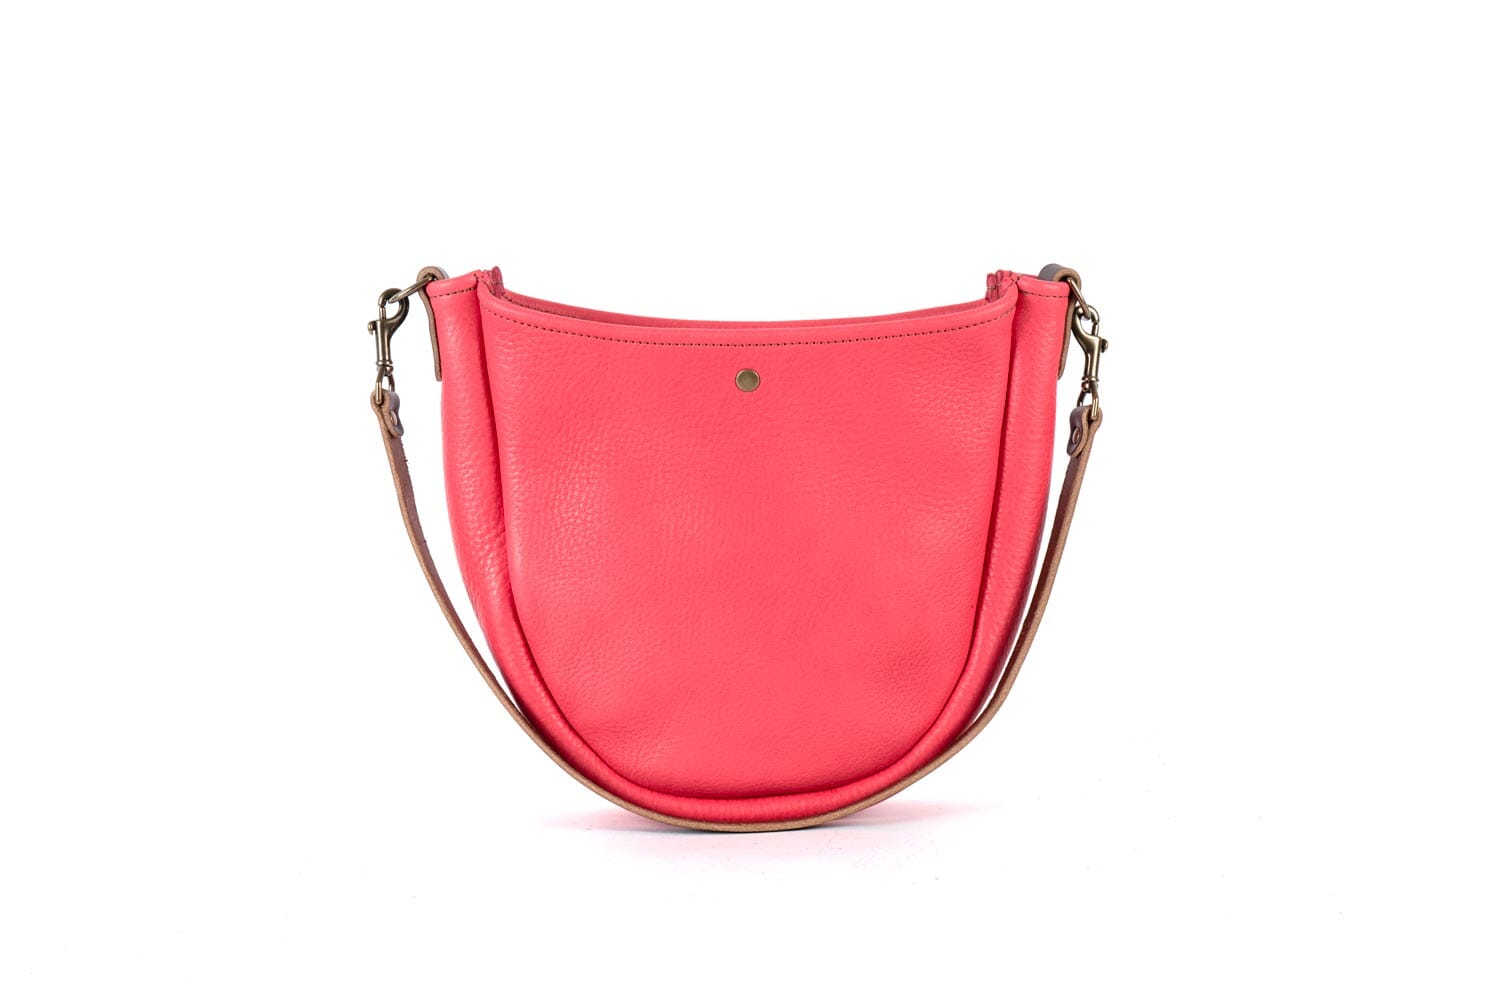 Celeste Leather Hobo Bag - Pink